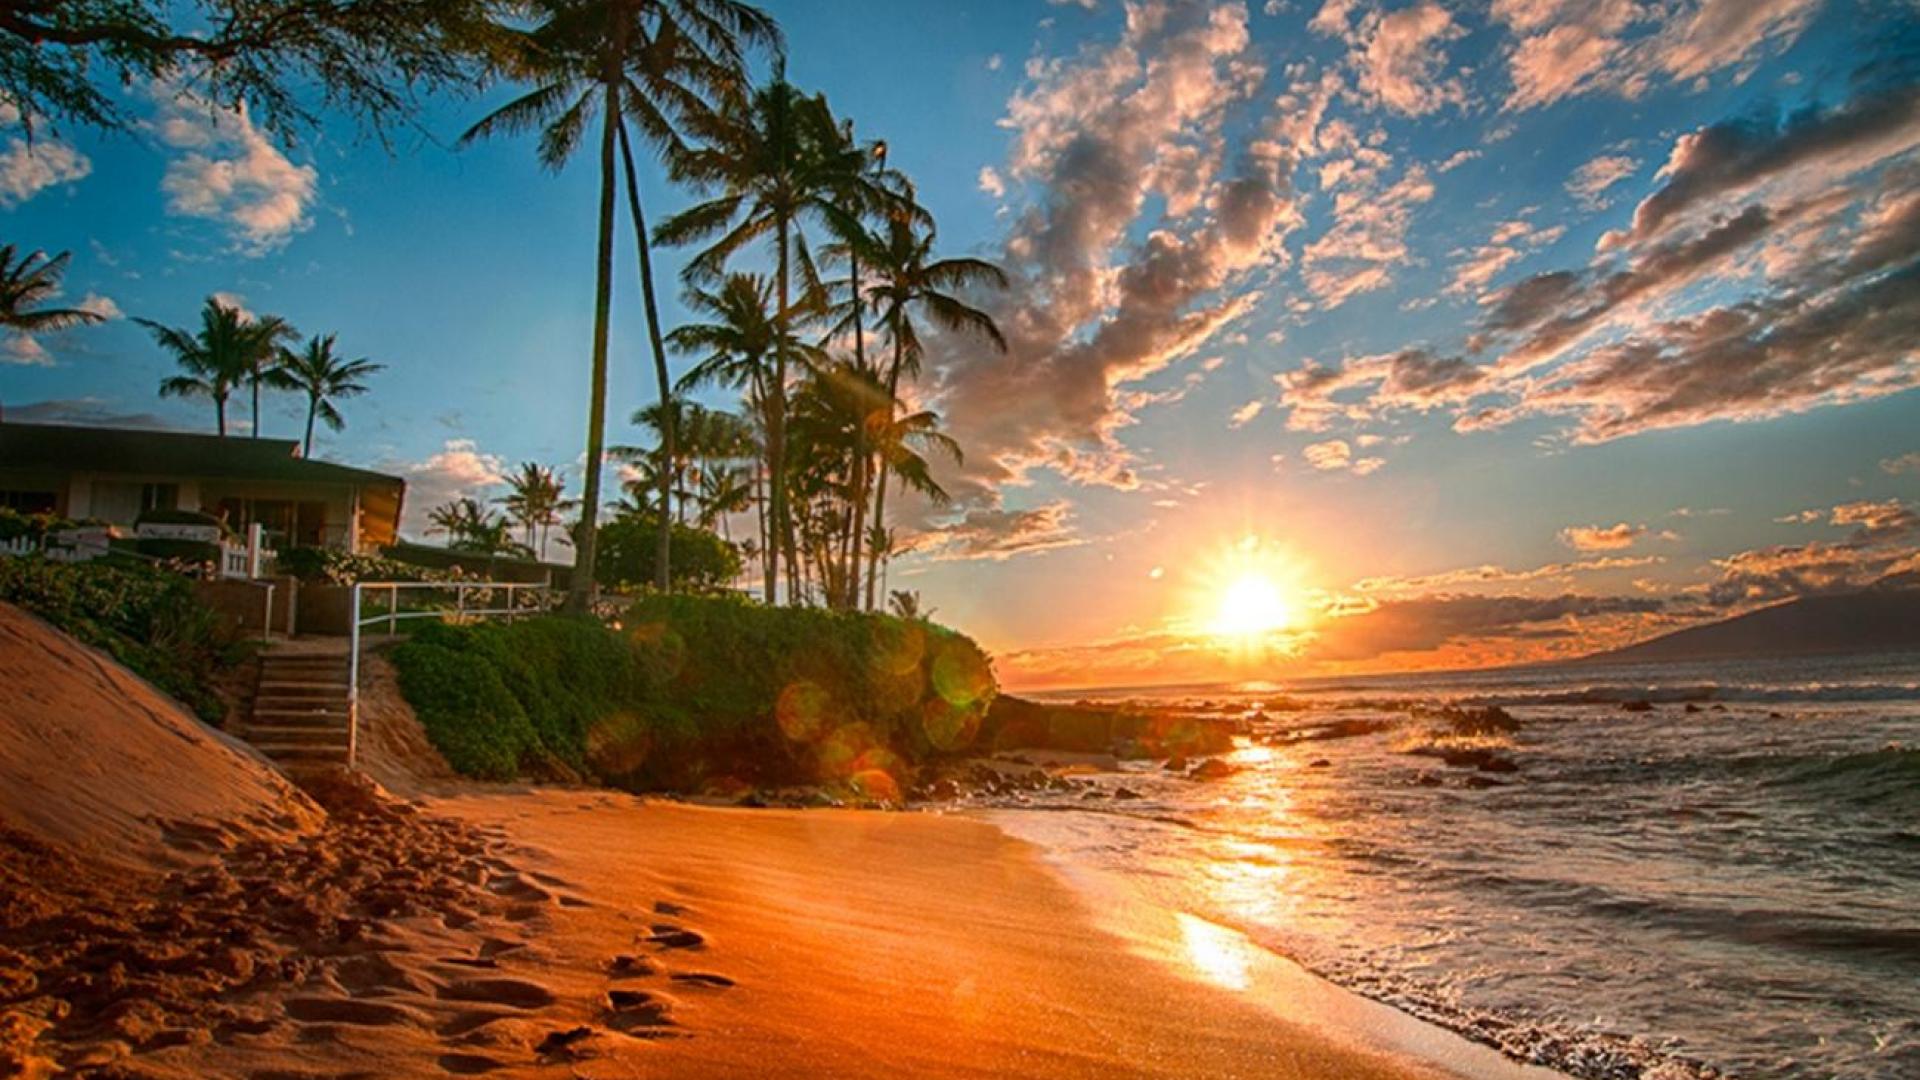 Hawaii Beach Sunset - Beach Sunset Wallpaper Hd - HD Wallpaper 